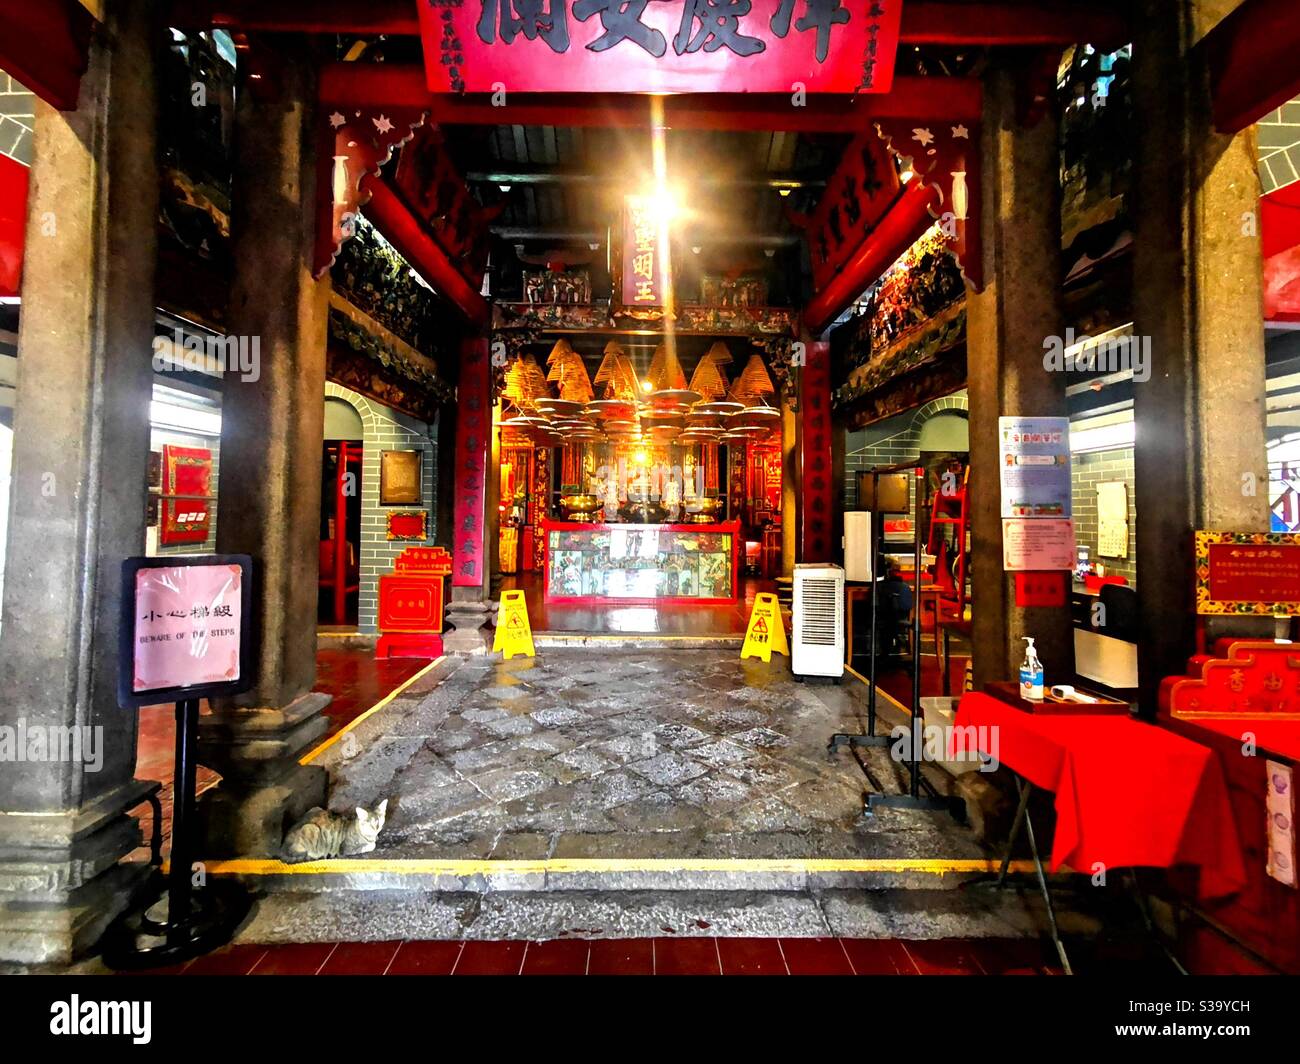 Hung Shing temple in Ap Lei Chau, Hong Kong. Stock Photo